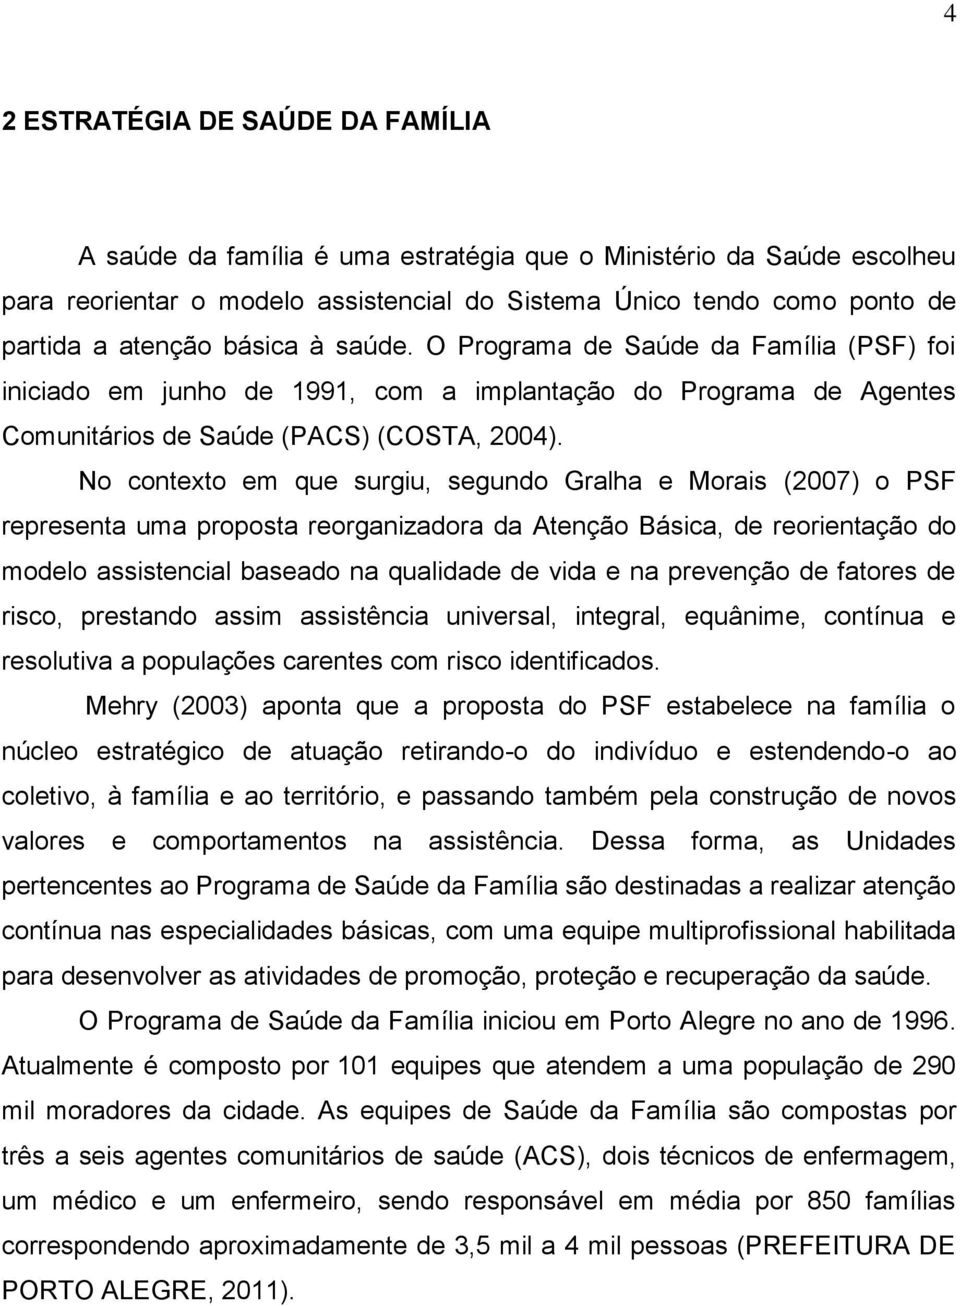 No contexto em que surgiu, segundo Gralha e Morais (2007) o PSF representa uma proposta reorganizadora da Atenção Básica, de reorientação do modelo assistencial baseado na qualidade de vida e na